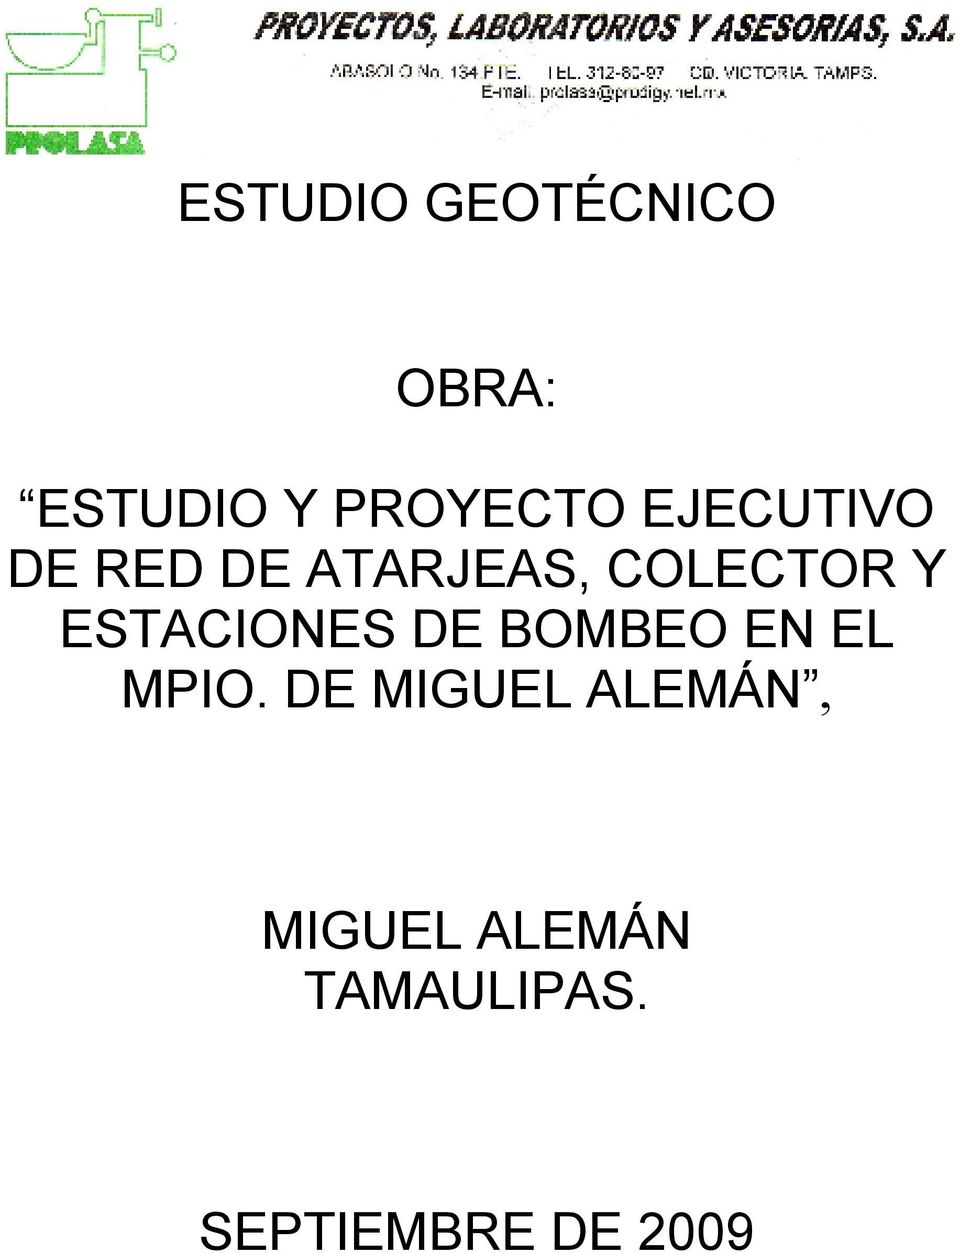 ESTACIONES DE BOMBEO EN EL MPIO.